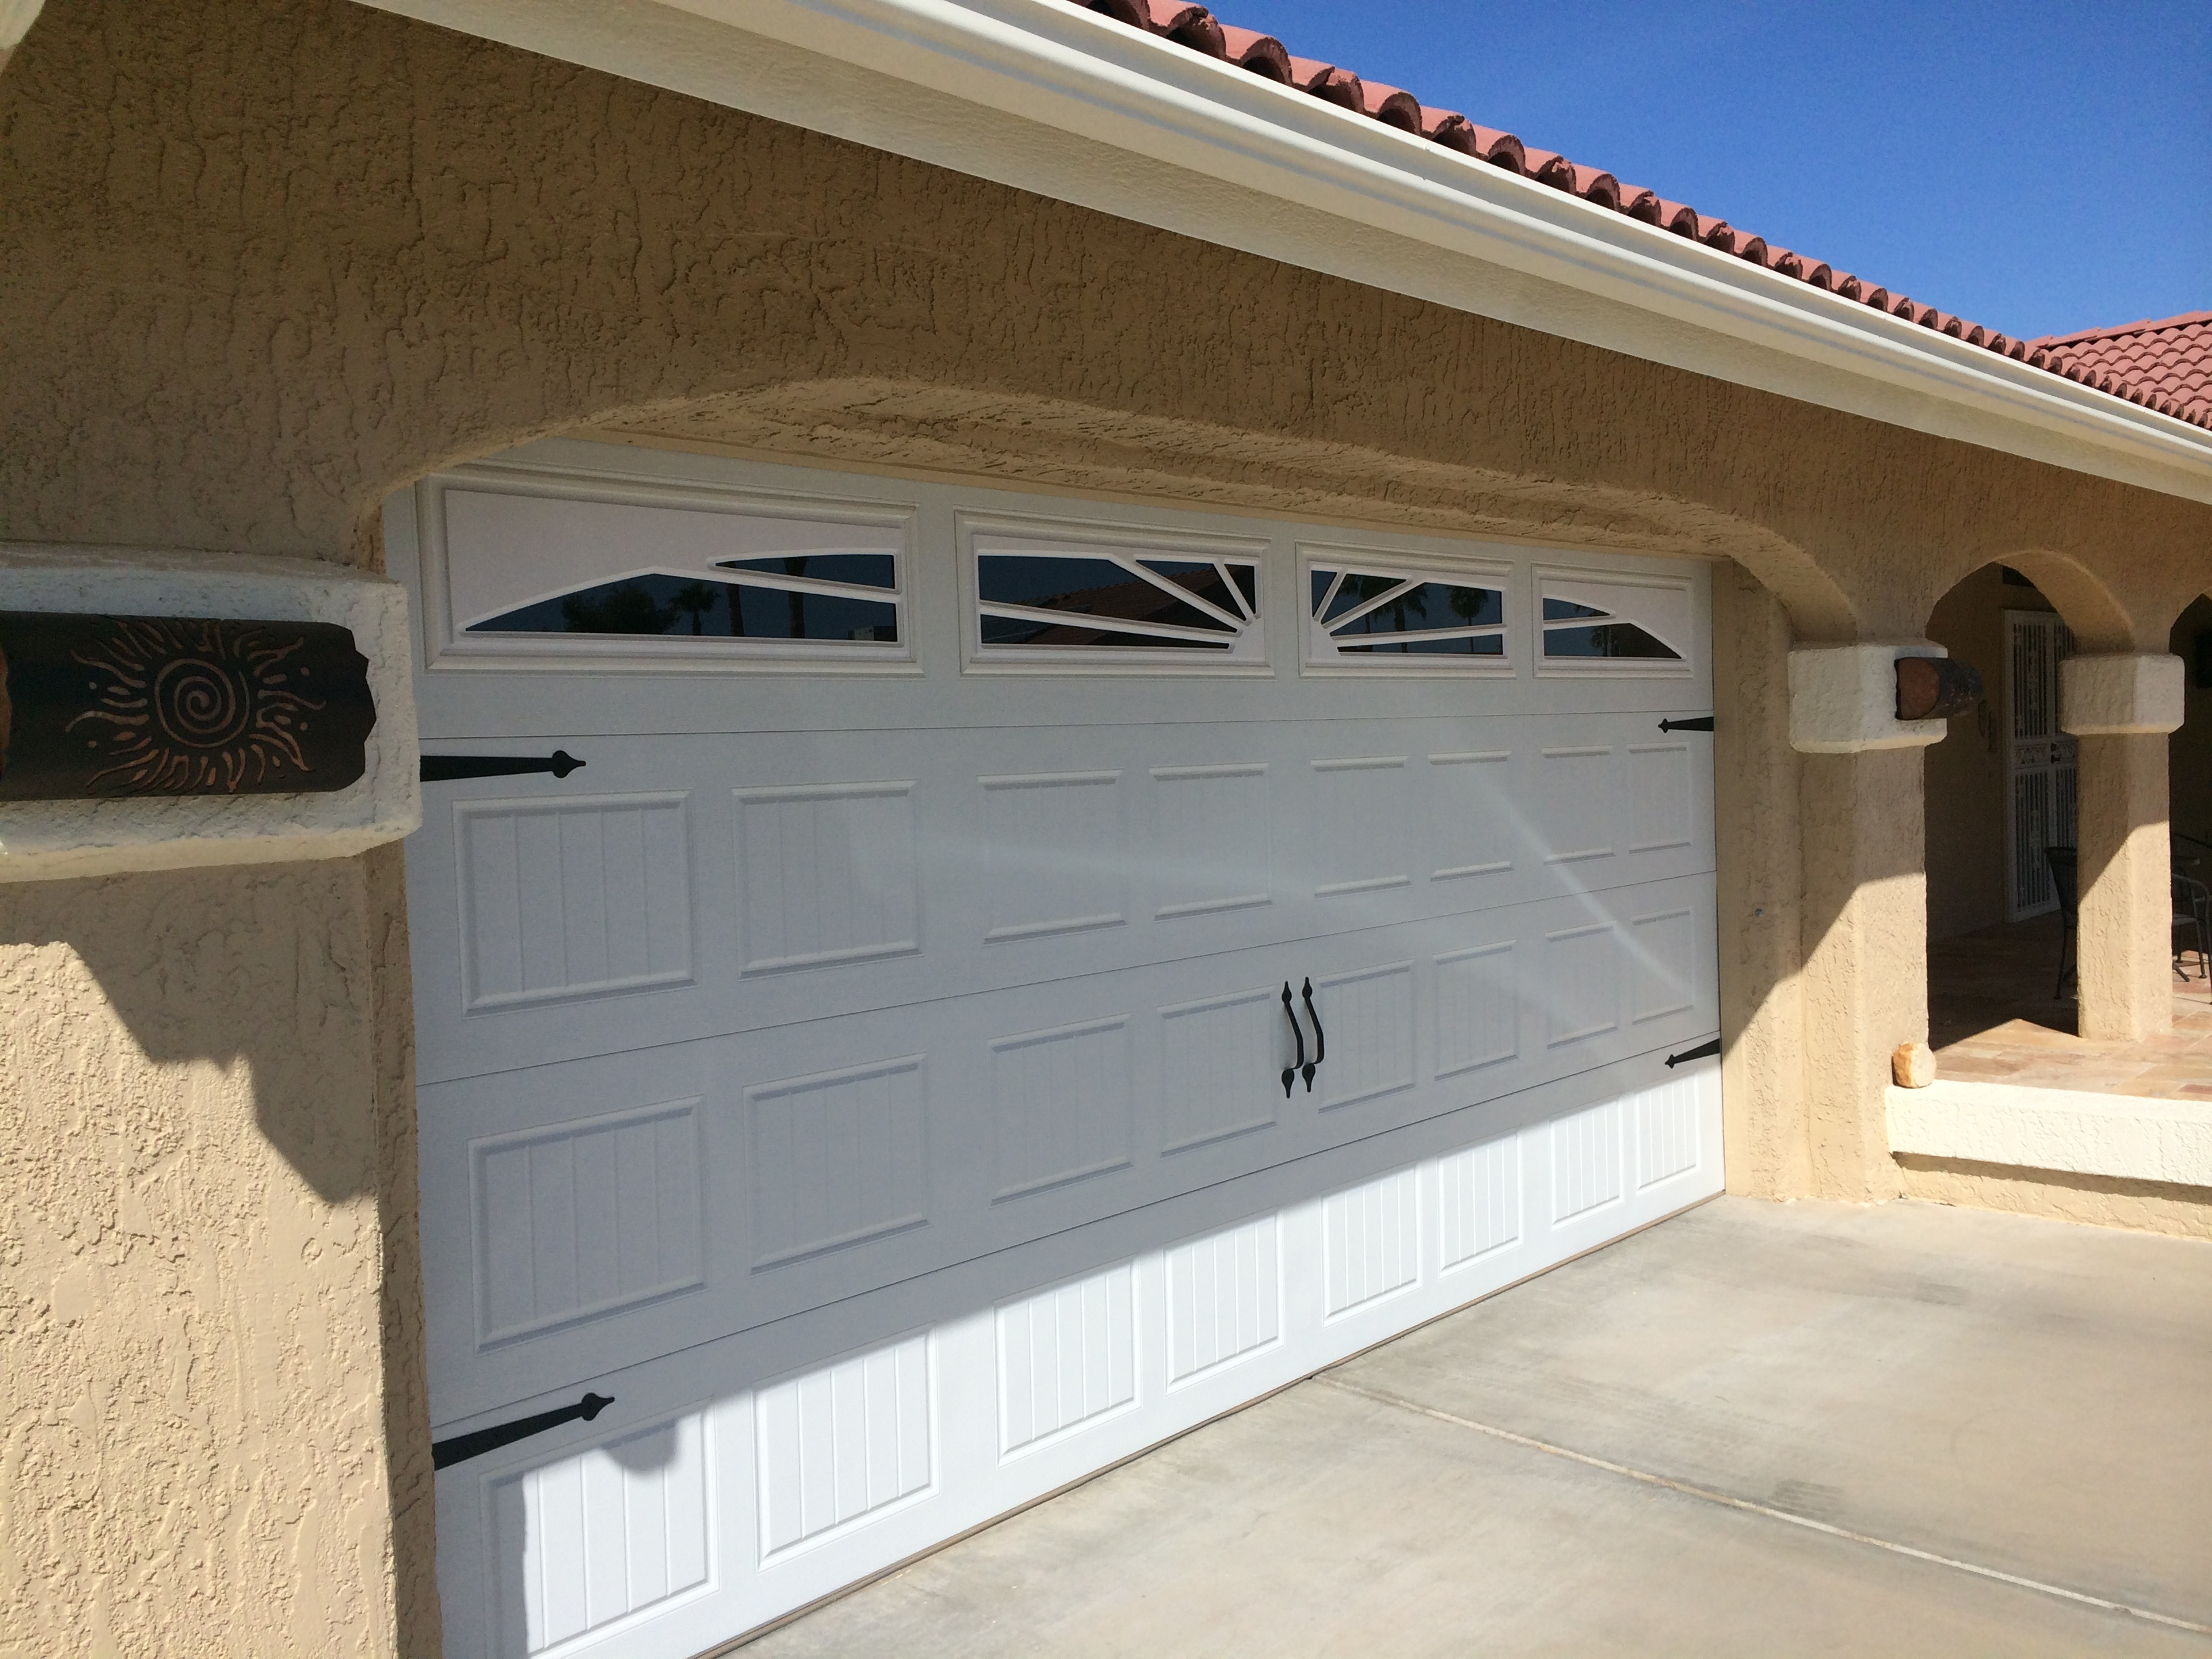 Garage Doors Installed In Sun City Sun City Garage Doors Repairs with regard to proportions 3264 X 2448